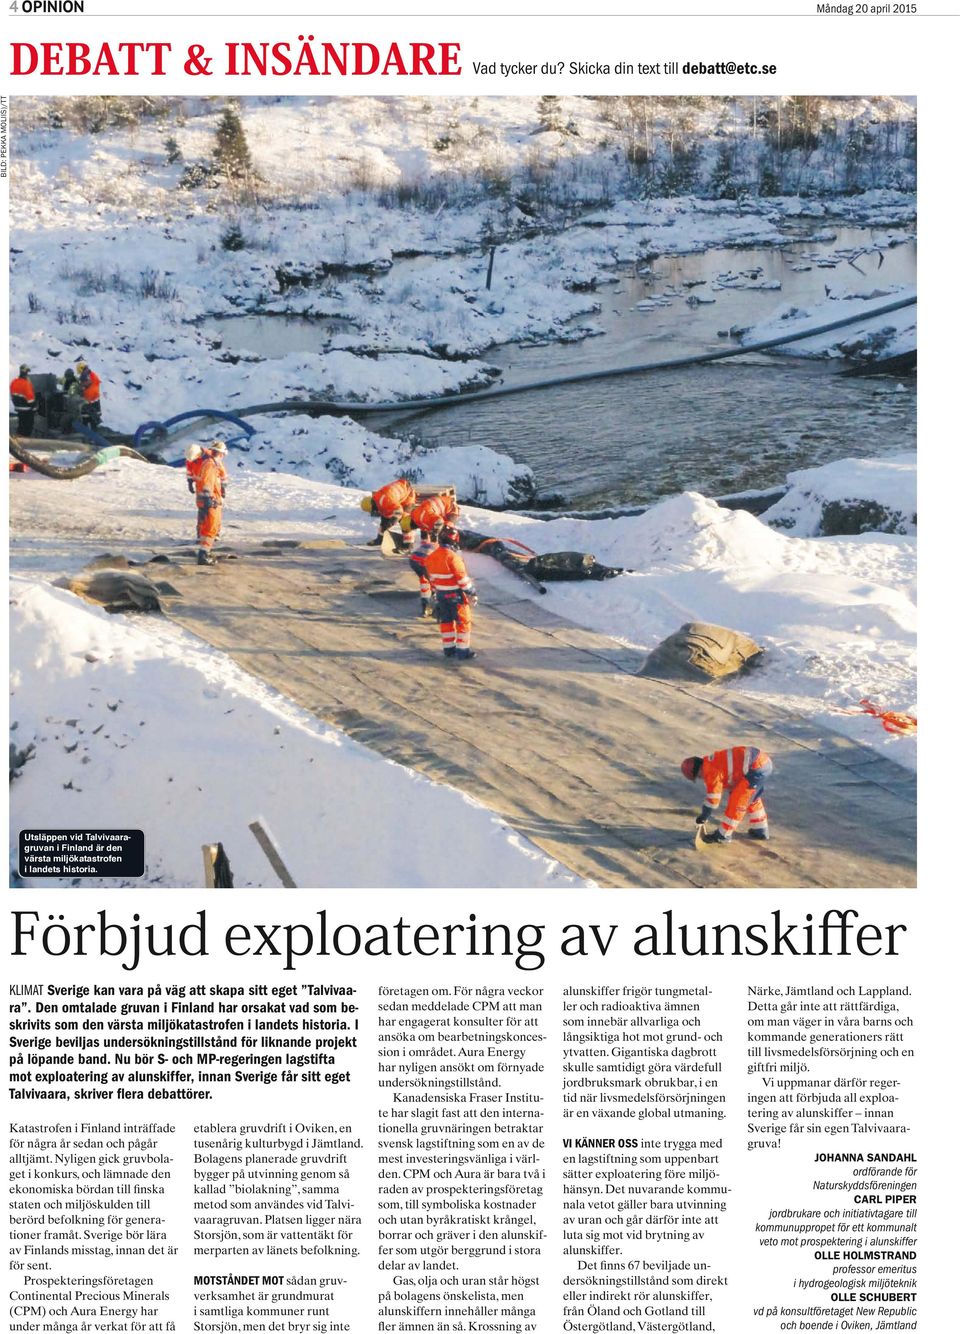 Förbjud exploatering av alunskiffer klimat Sverige kan vara på väg att skapa sitt eget Talvivaara.